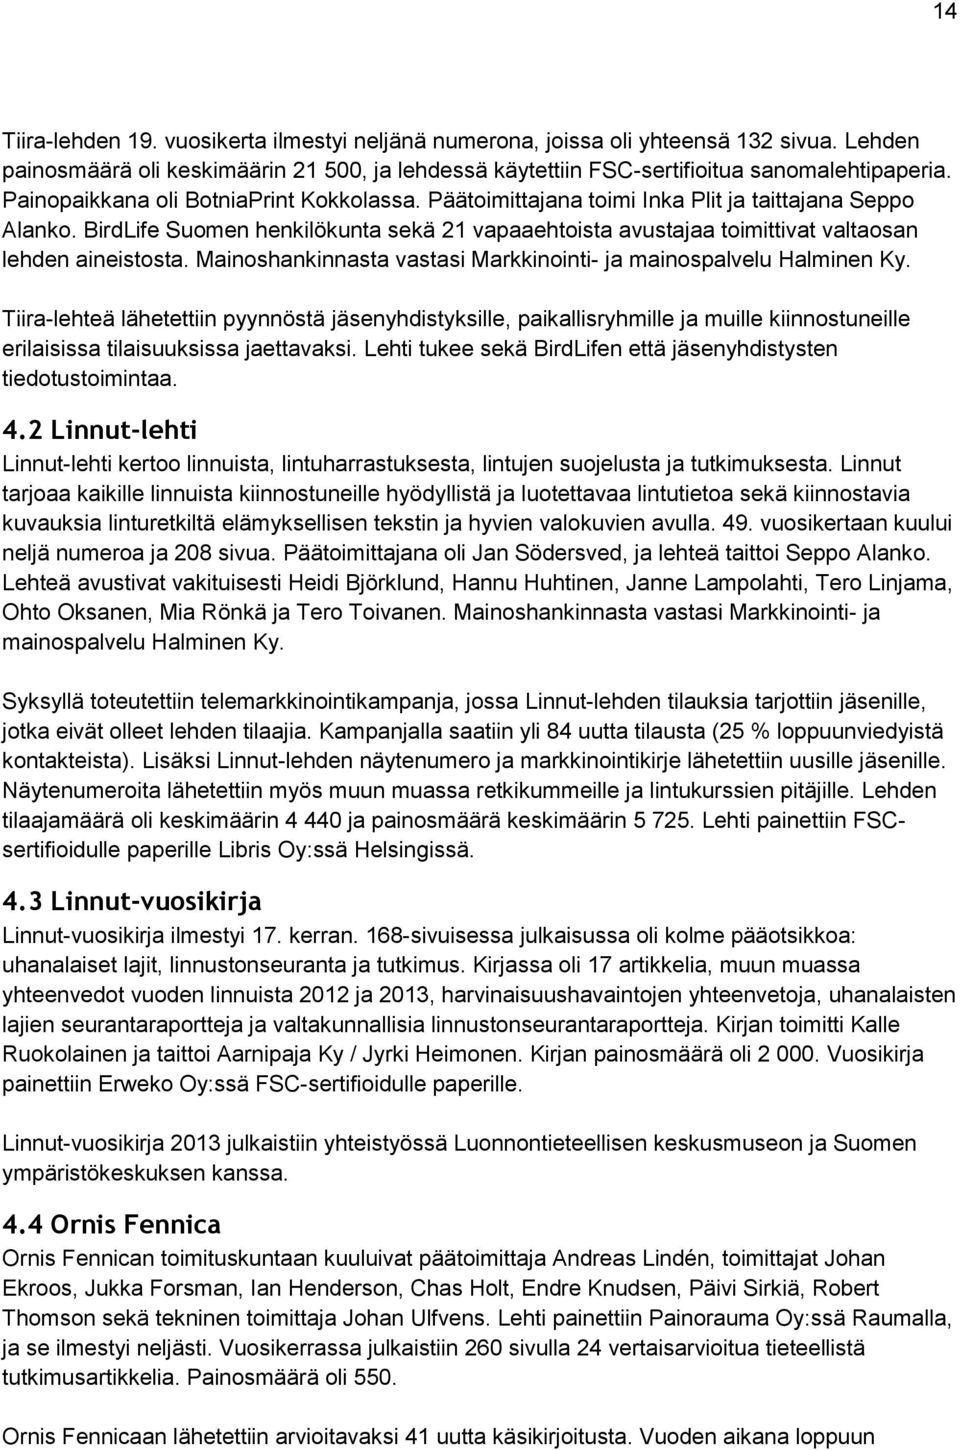 BirdLife Suomen henkilökunta sekä 21 vapaaehtoista avustajaa toimittivat valtaosan lehden aineistosta. Mainoshankinnasta vastasi Markkinointi- ja mainospalvelu Halminen Ky.